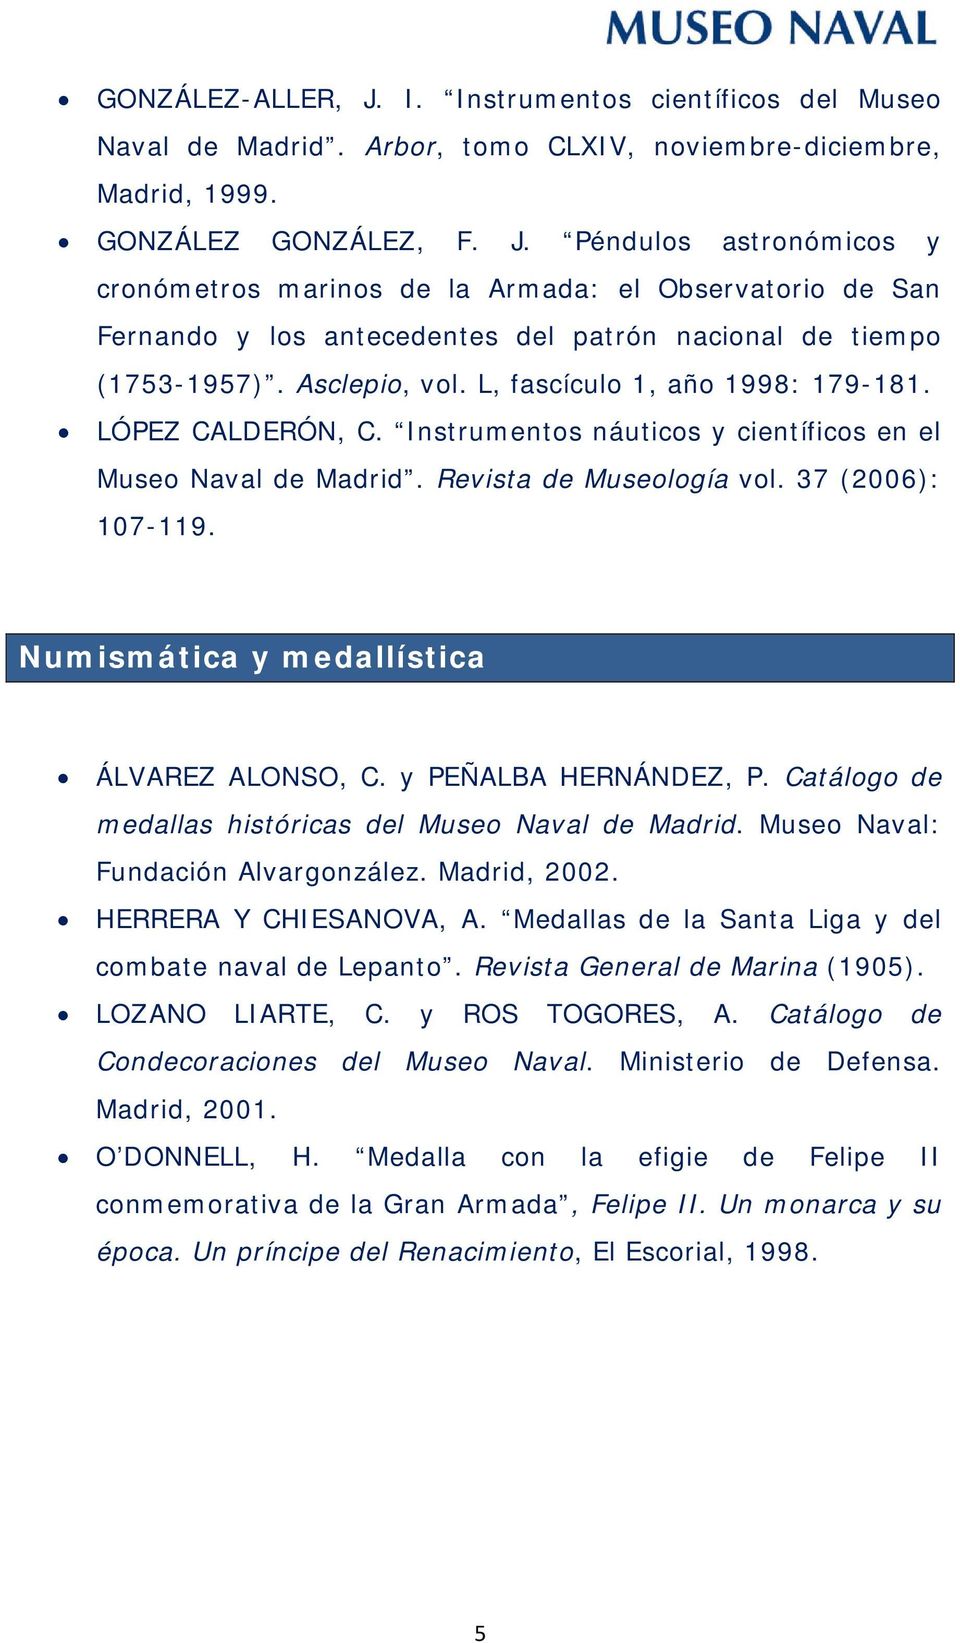 Numismática y medallística ÁLVAREZ ALONSO, C. y PEÑALBA HERNÁNDEZ, P. Catálogo de medallas históricas del Museo Naval de Madrid. Museo Naval: Fundación Alvargonzález. Madrid, 2002.